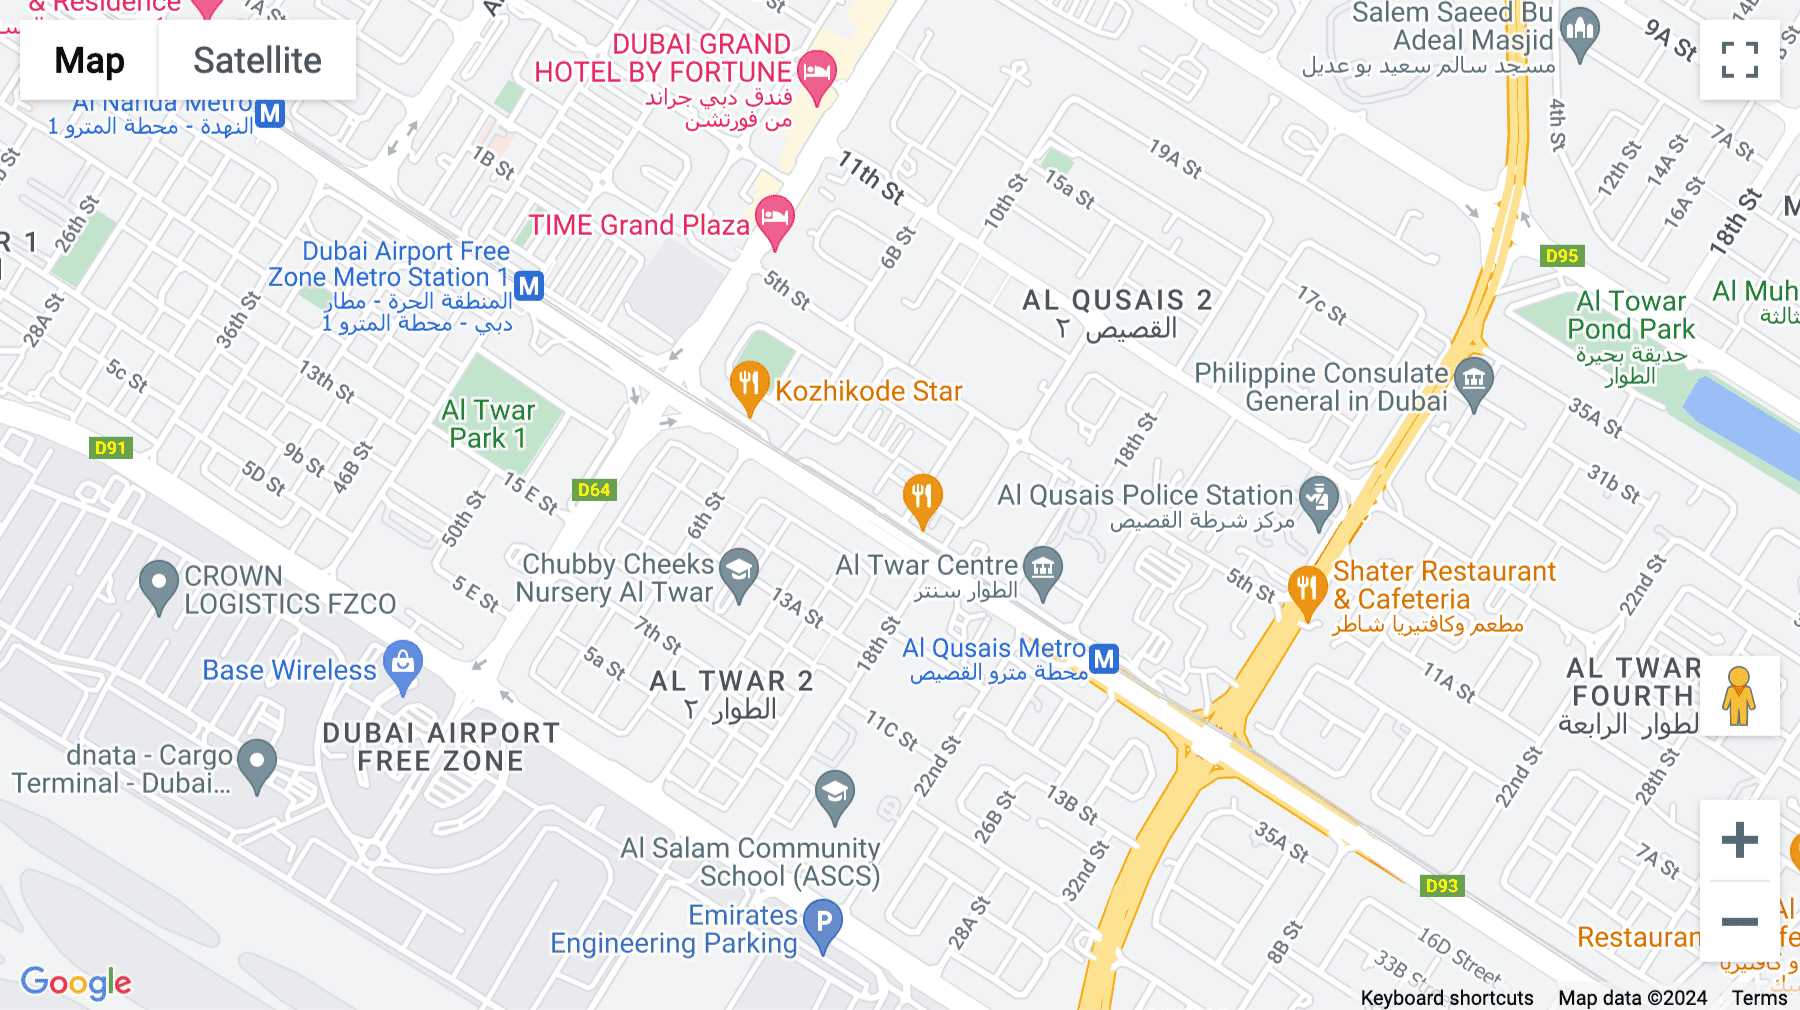 Click for interative map of Al Qusais, Nr. Deira, Dubai